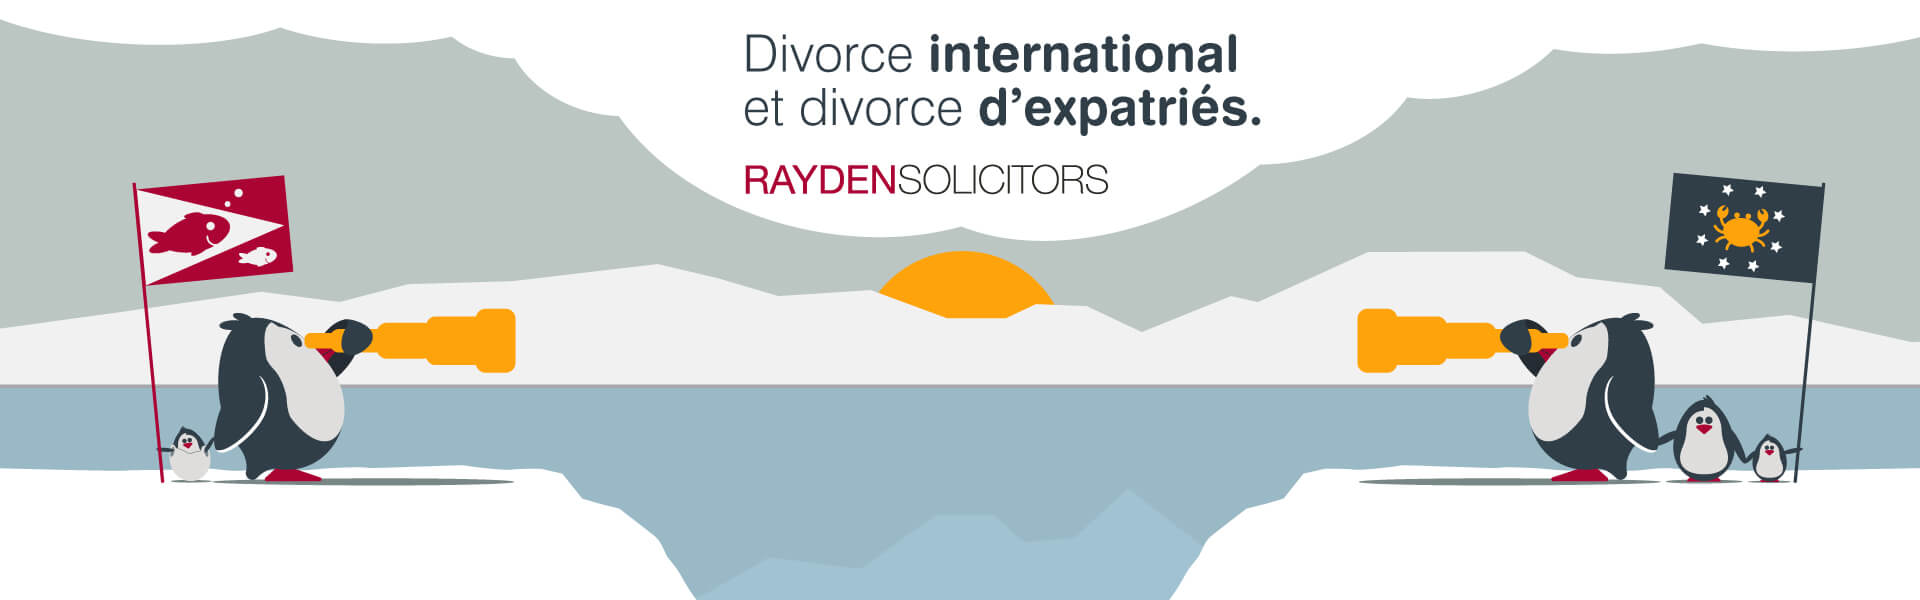 Divorce international et divorce d’expatriés